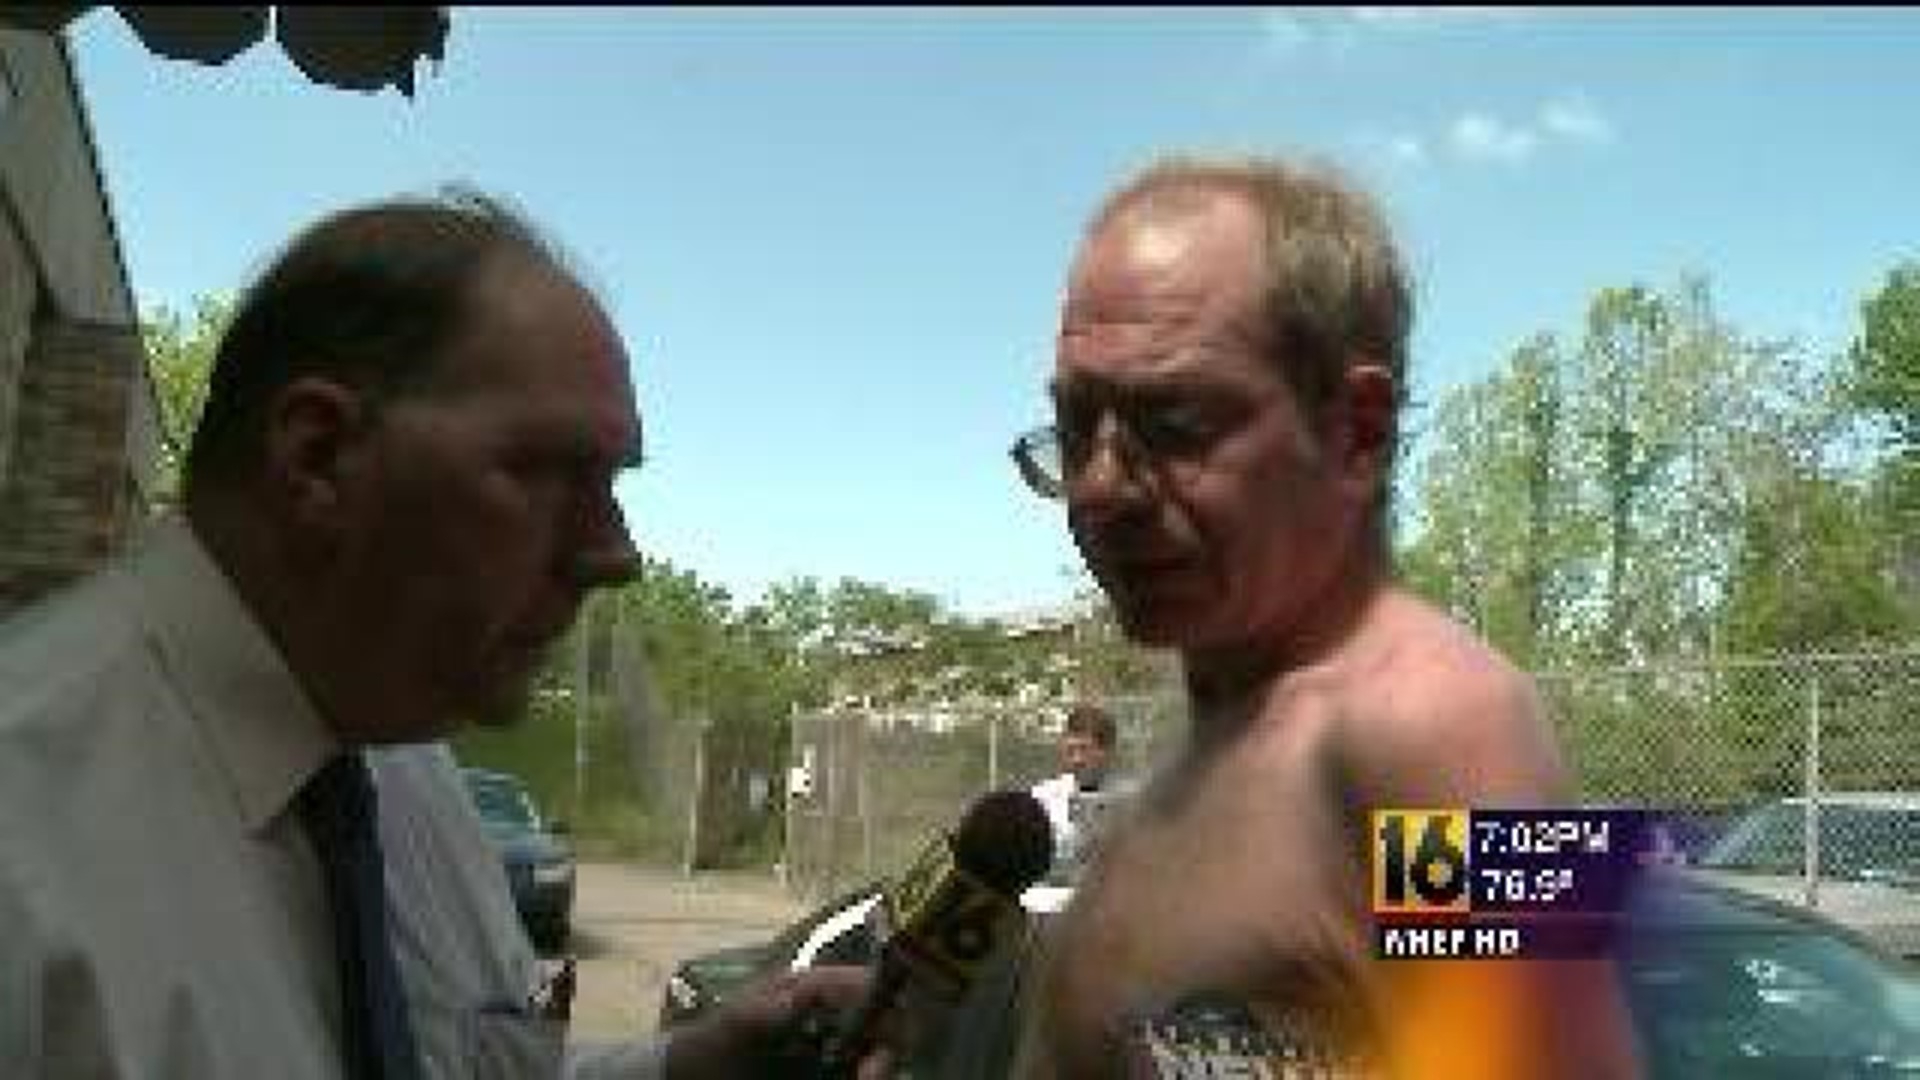 Man Accused In Stabbing Speaks Out